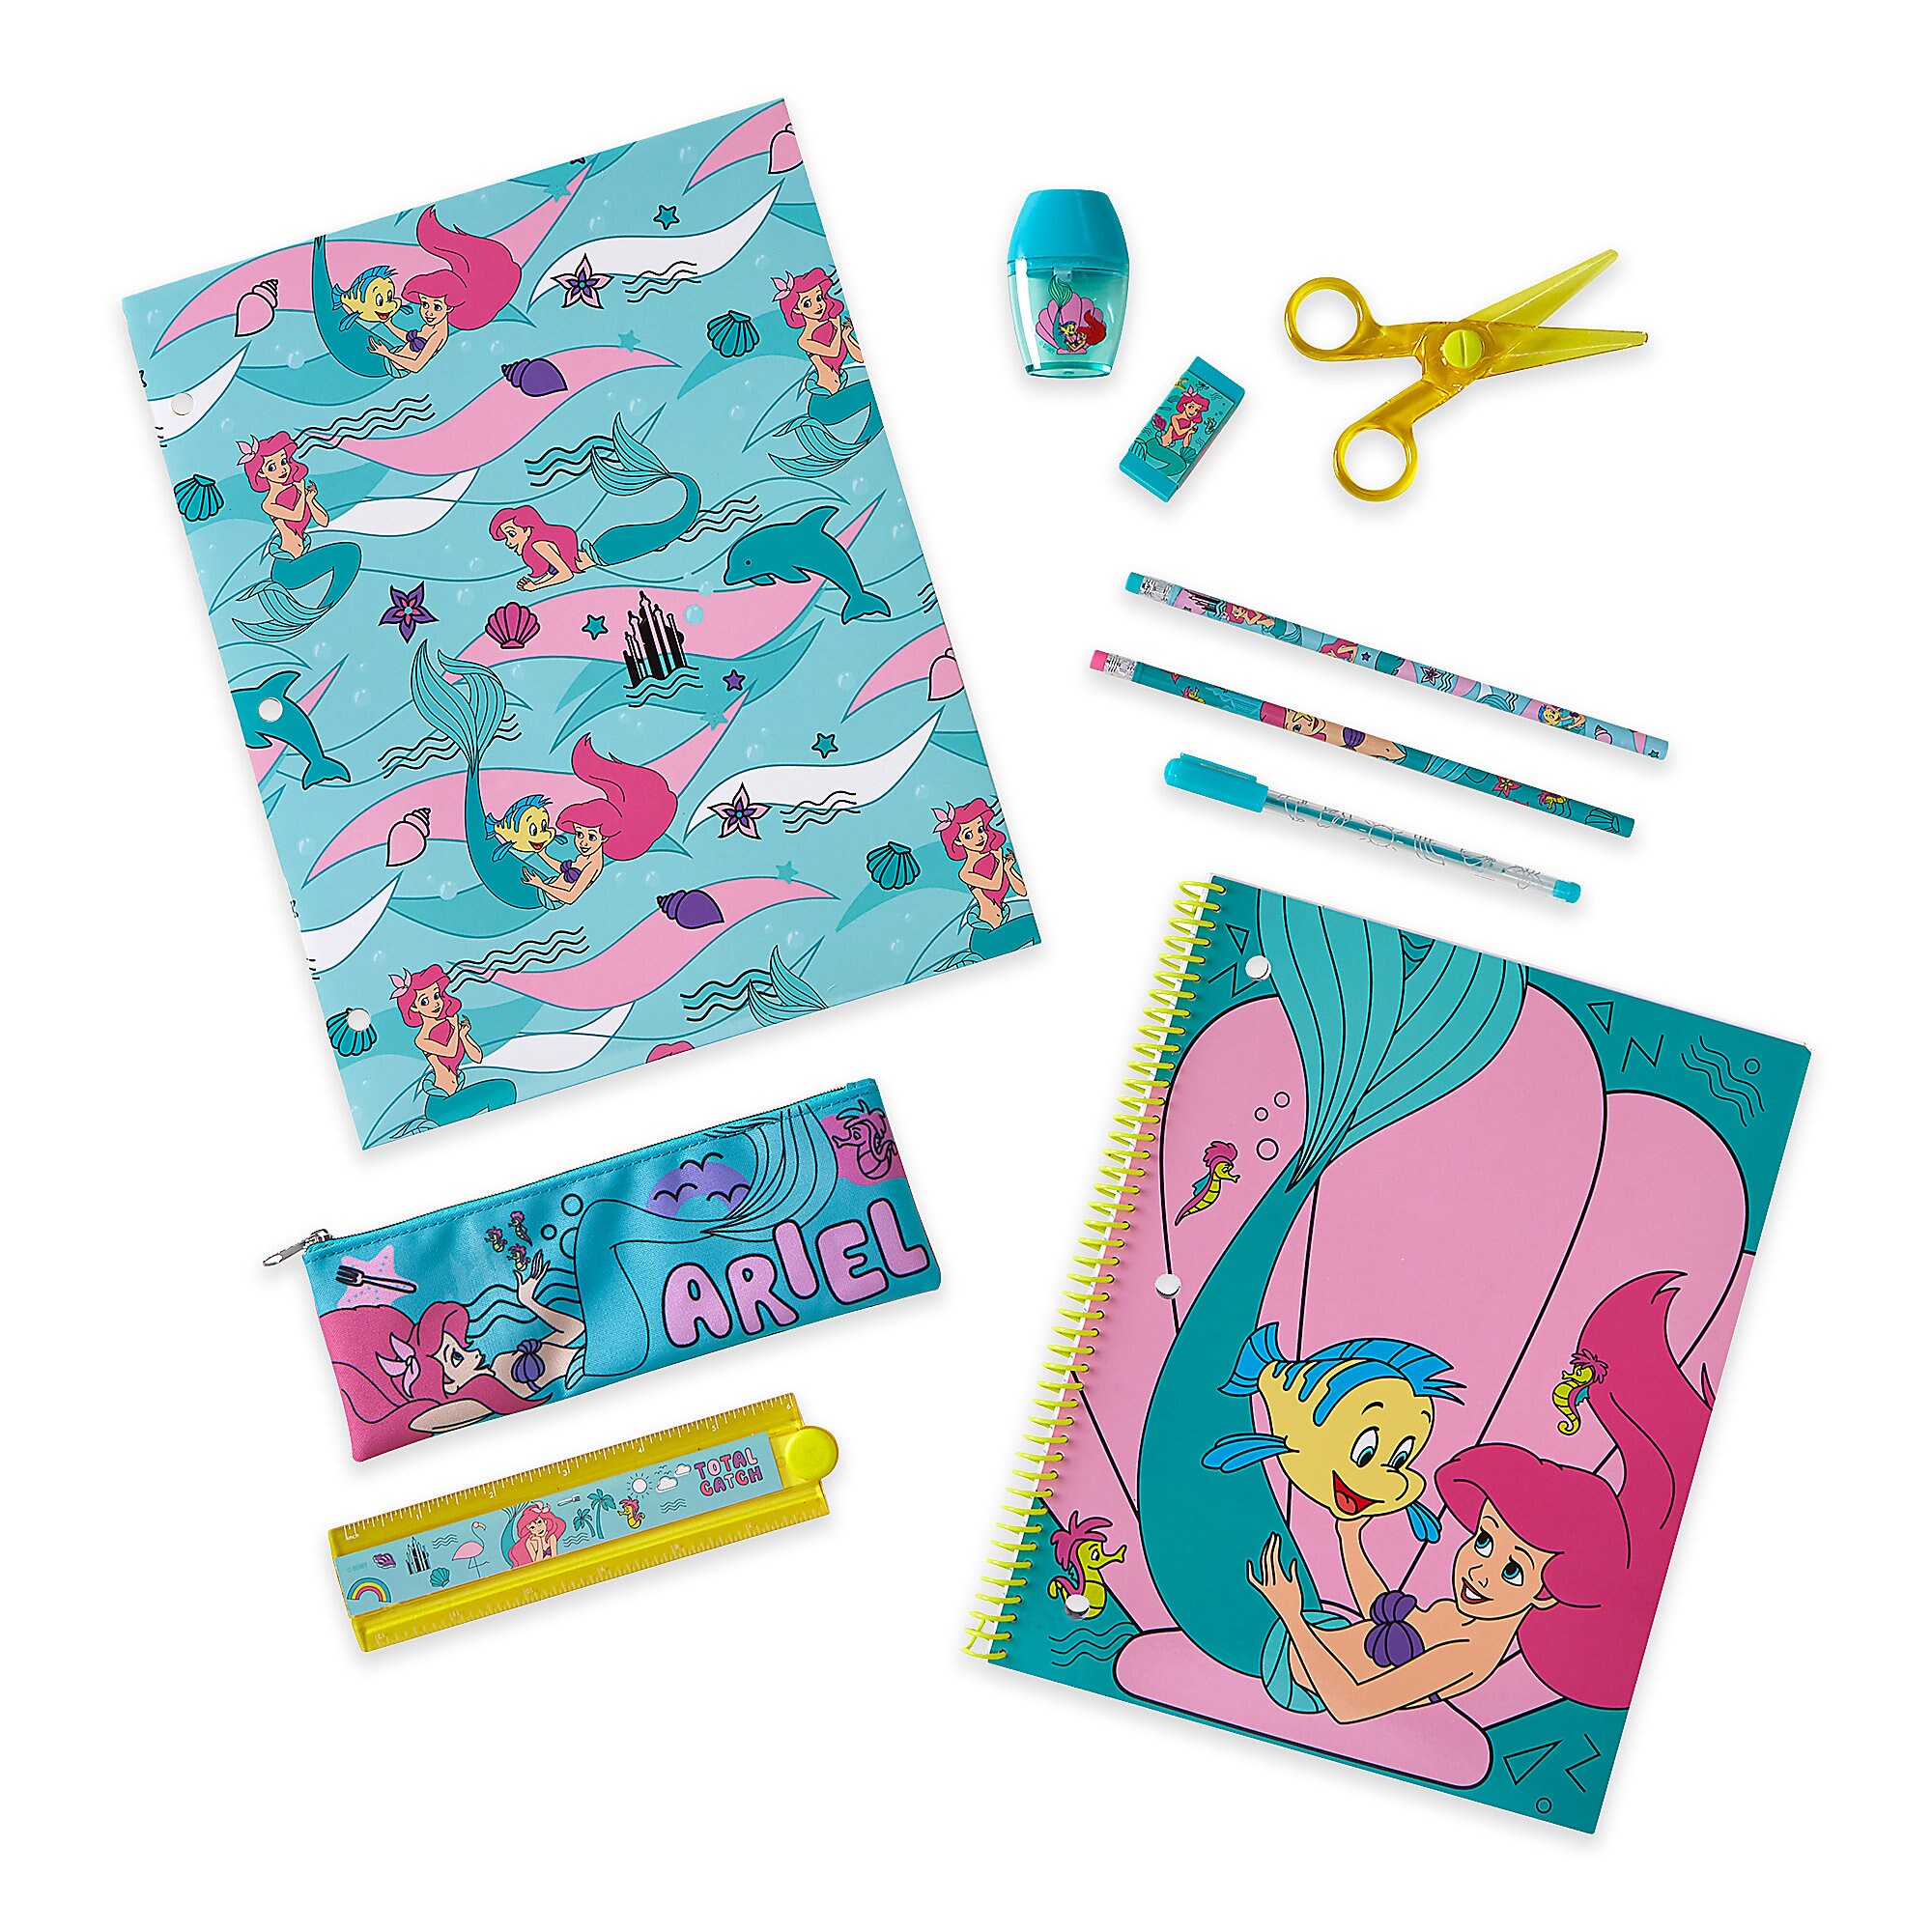 Ariel Stationery Supply Kit